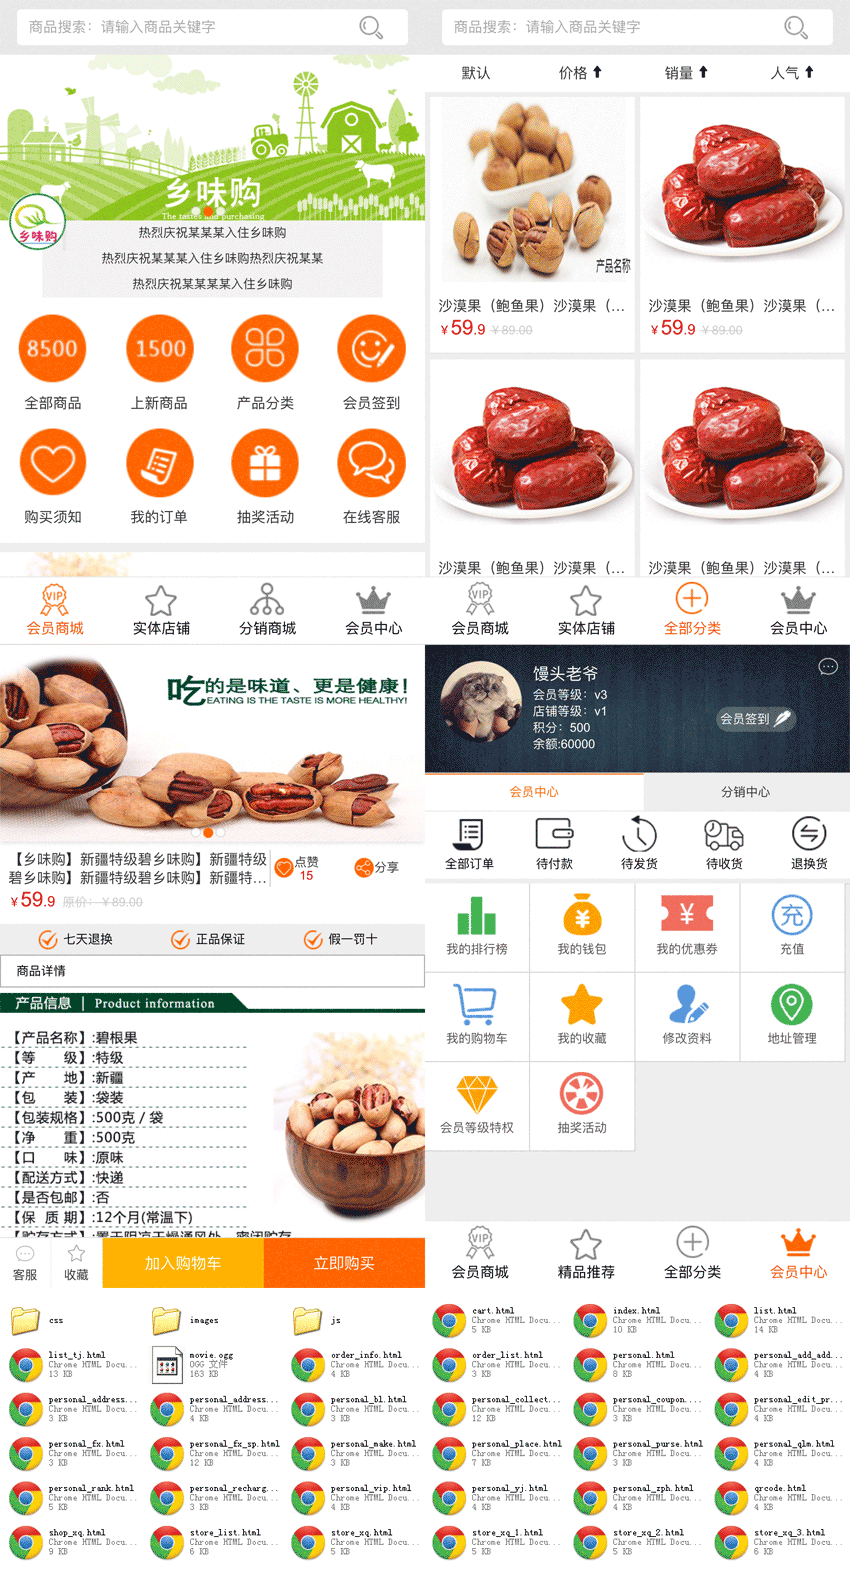 微信三级分销系统食品购物商城模板html下载